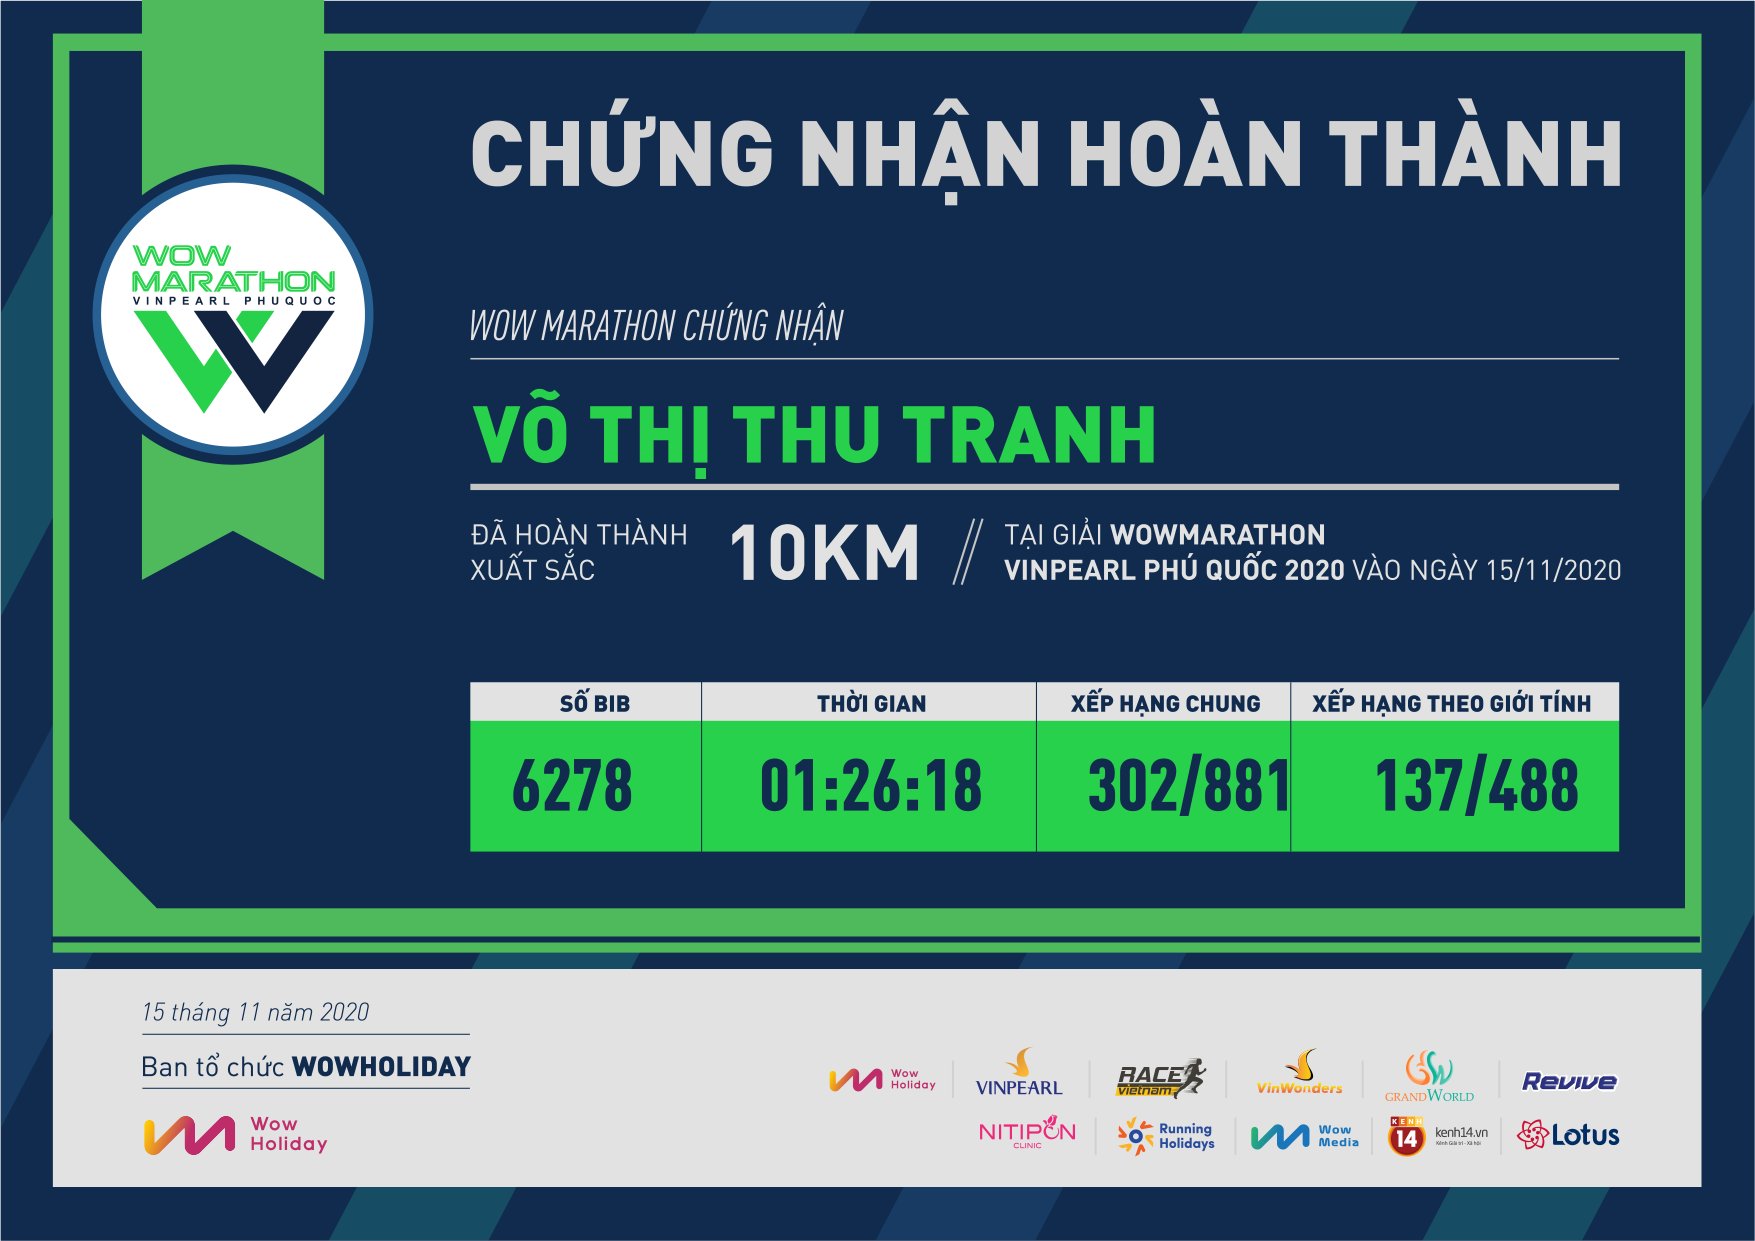 6278 - Võ Thị Thu Tranh